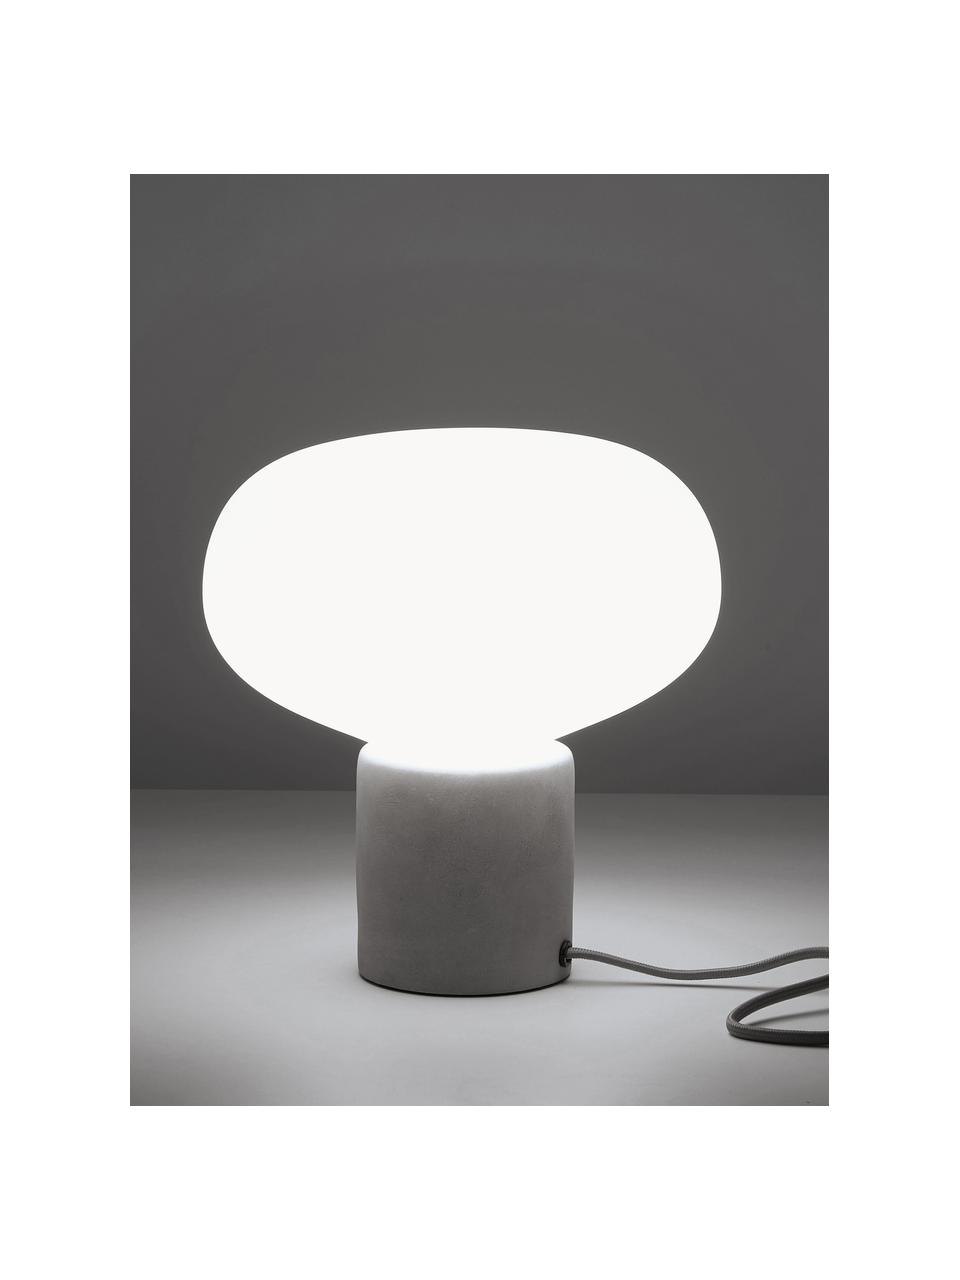 Lámpara de mesa pequeña de hormigón Alma, Pantalla: vidrio, Cable: cubierto en tela, Blanco, gris claro, Ø 23 x Al 24 cm